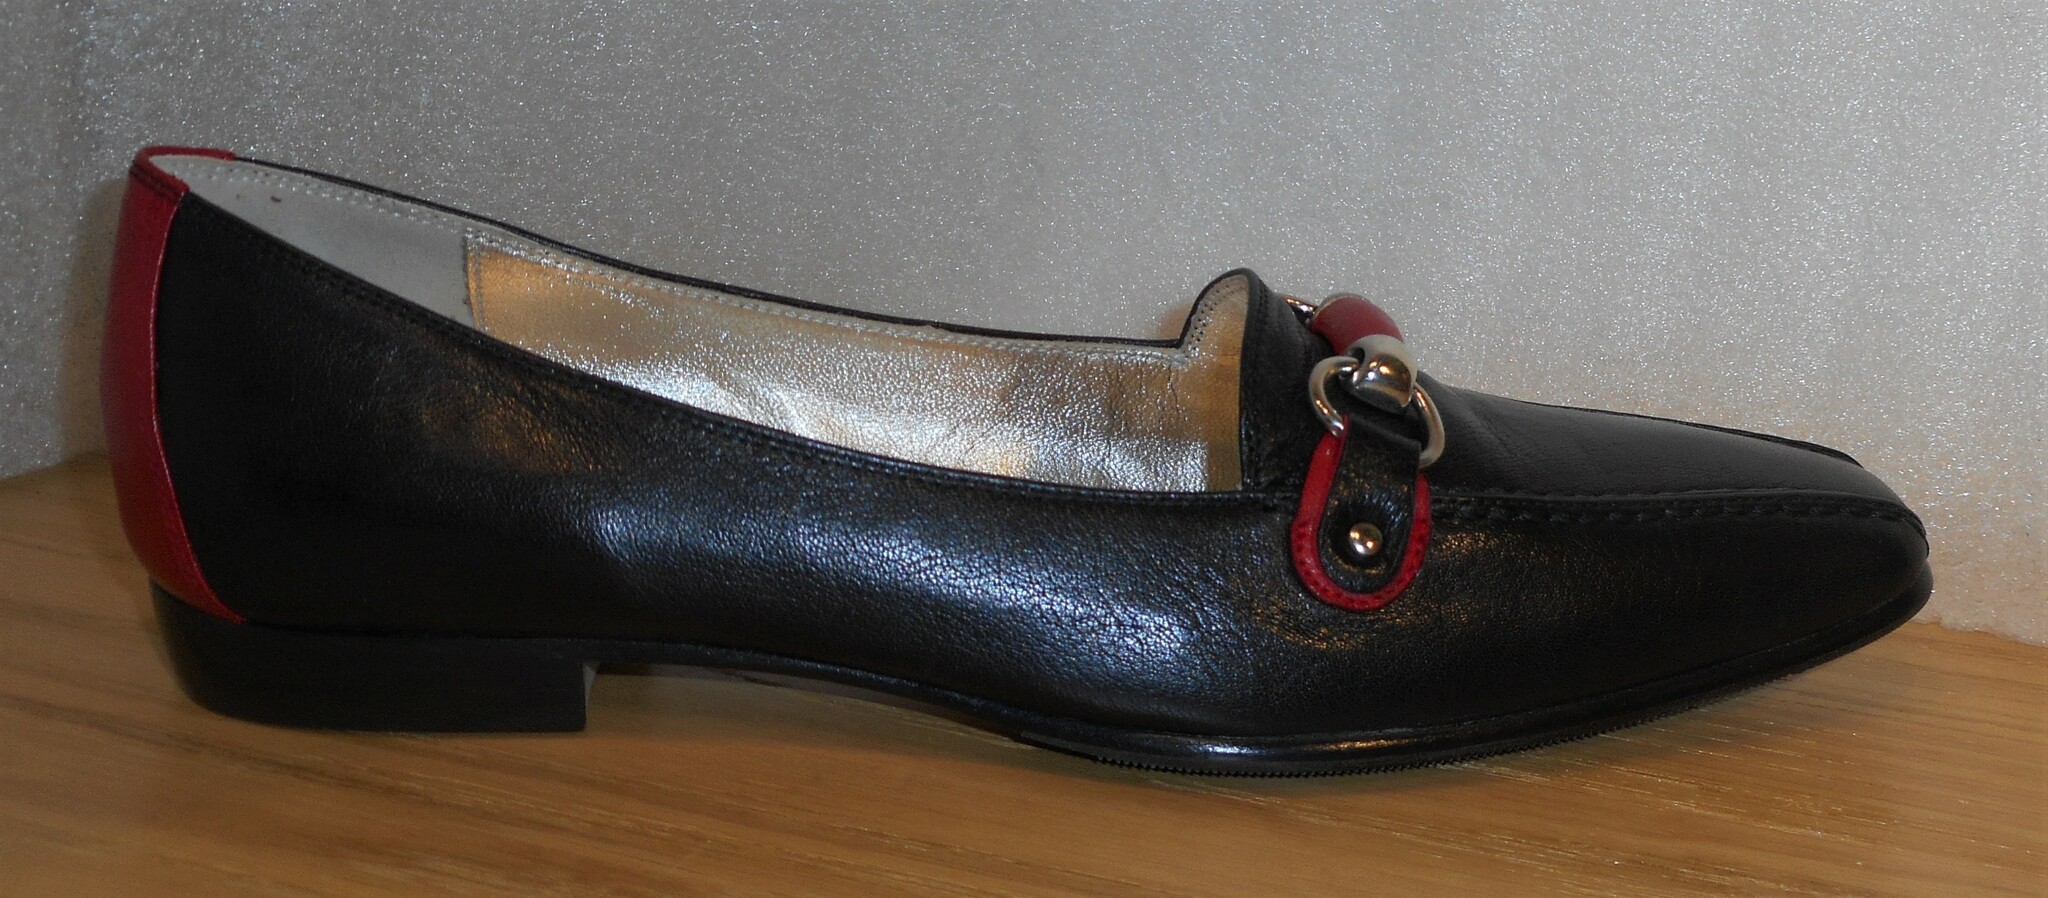 Marinblå loafer med röda detaljer - från italienska Mara Bini